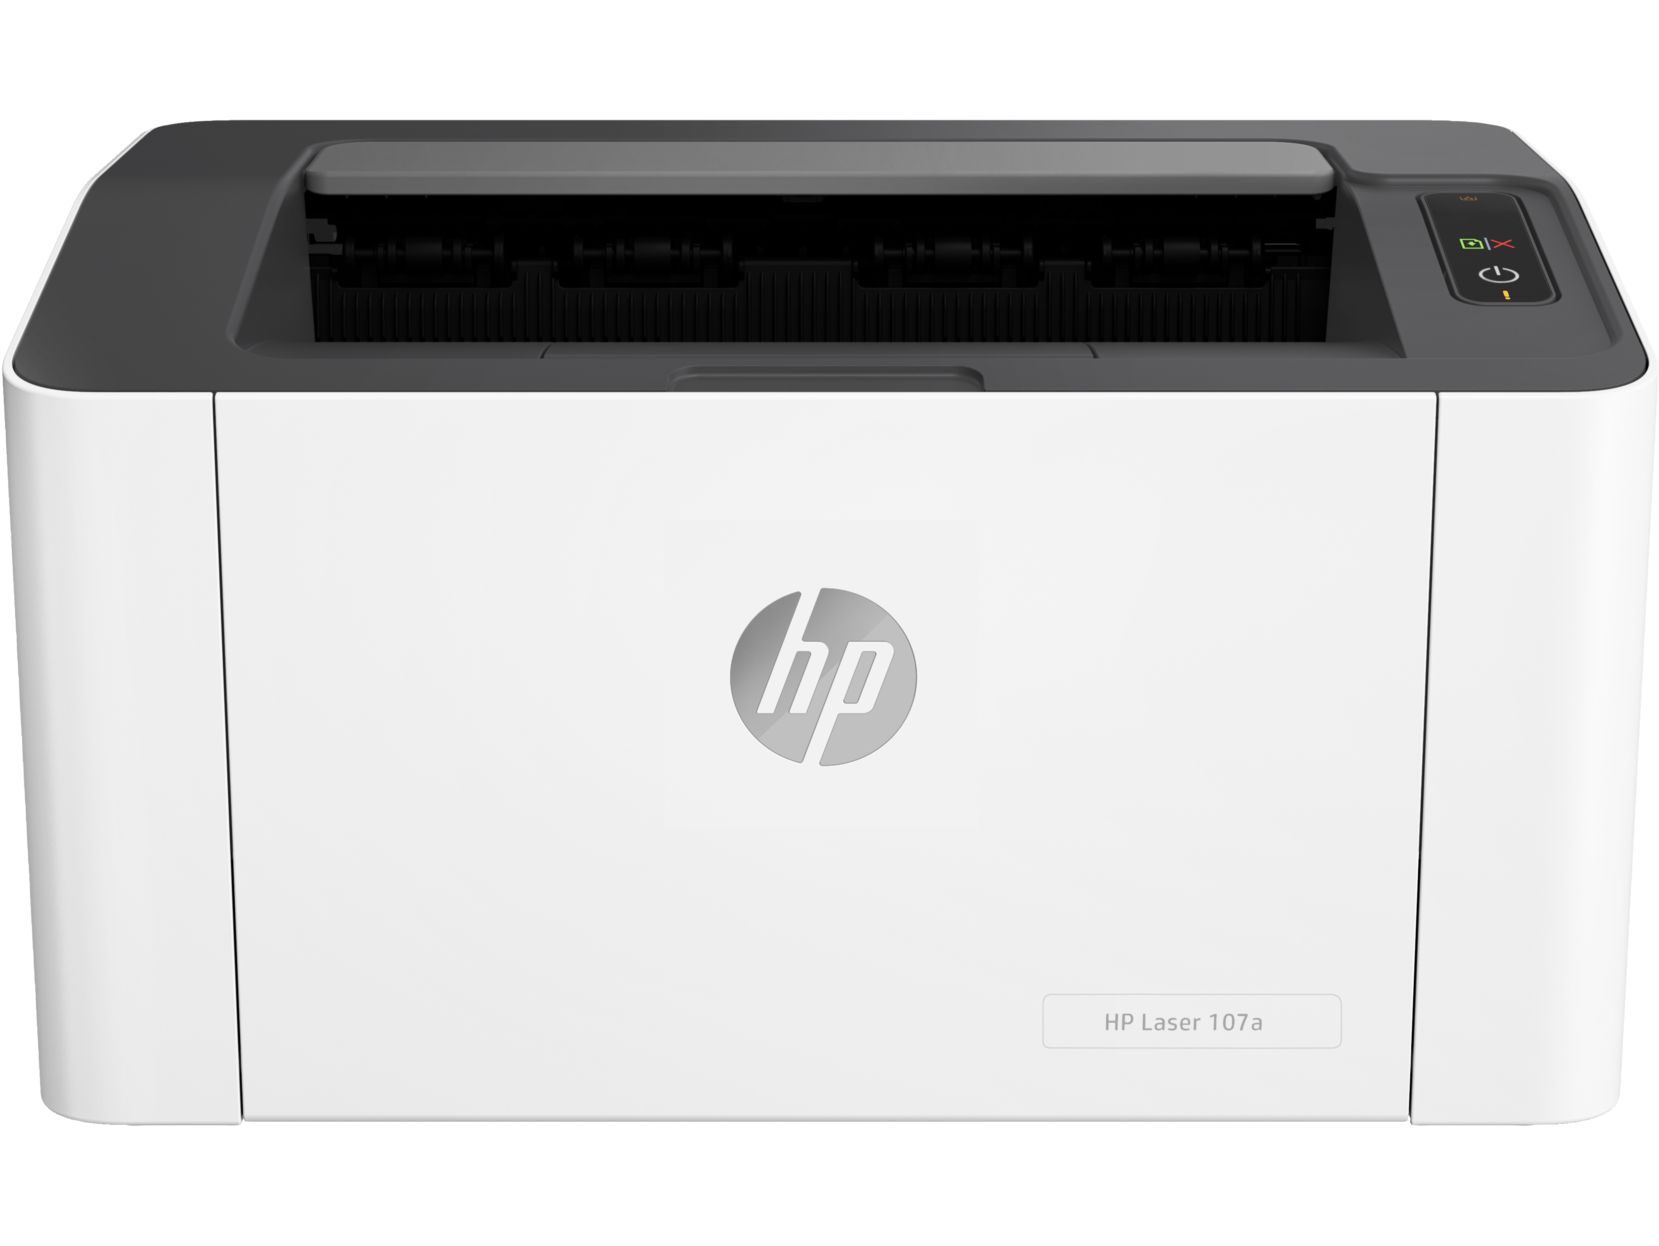 Принтер HP Laser 107a принтер hp laser 107a 4zb77a